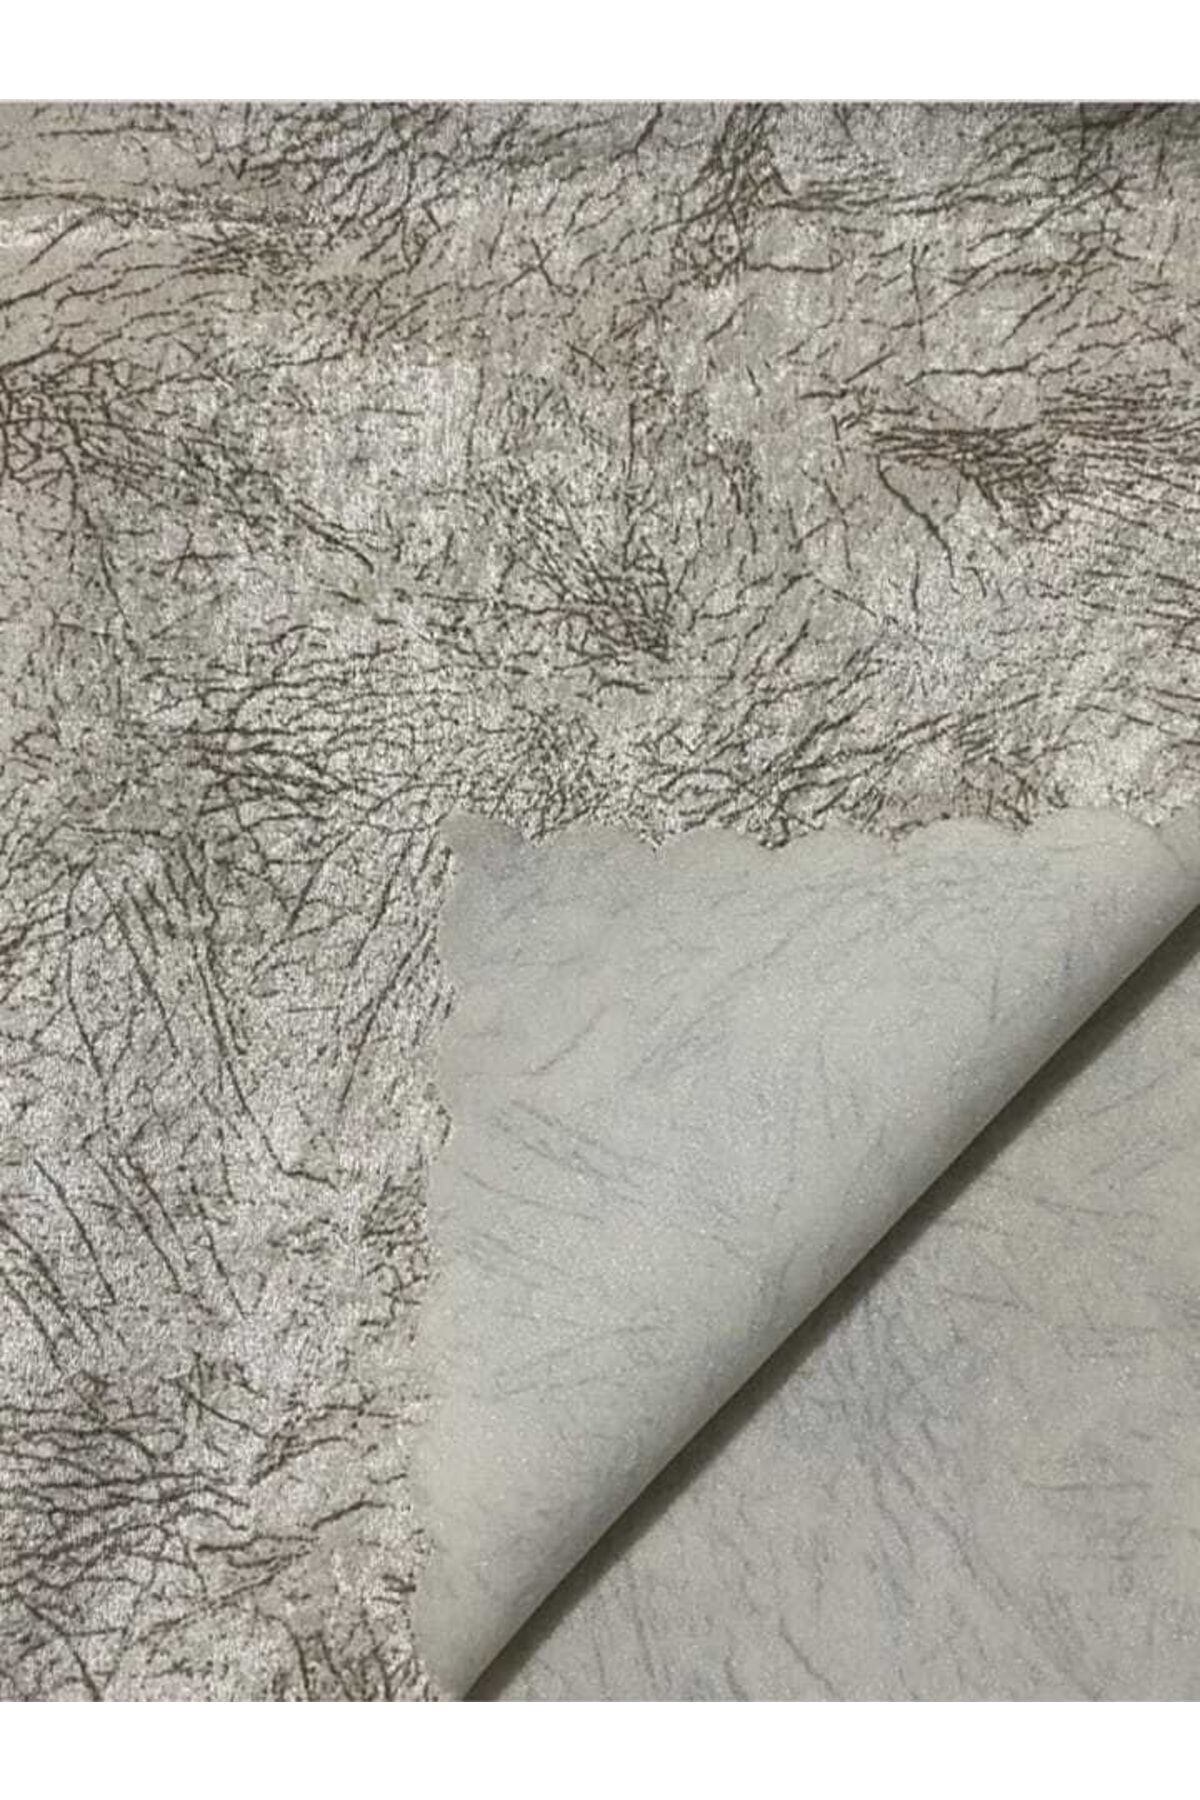 KARAHANLI Damar Desen Ince Kaymaz Süngerli Kanepe Koltuk Örtüsü Bej Renk 1 Adet 175 X 215cm Çekyat Örtü